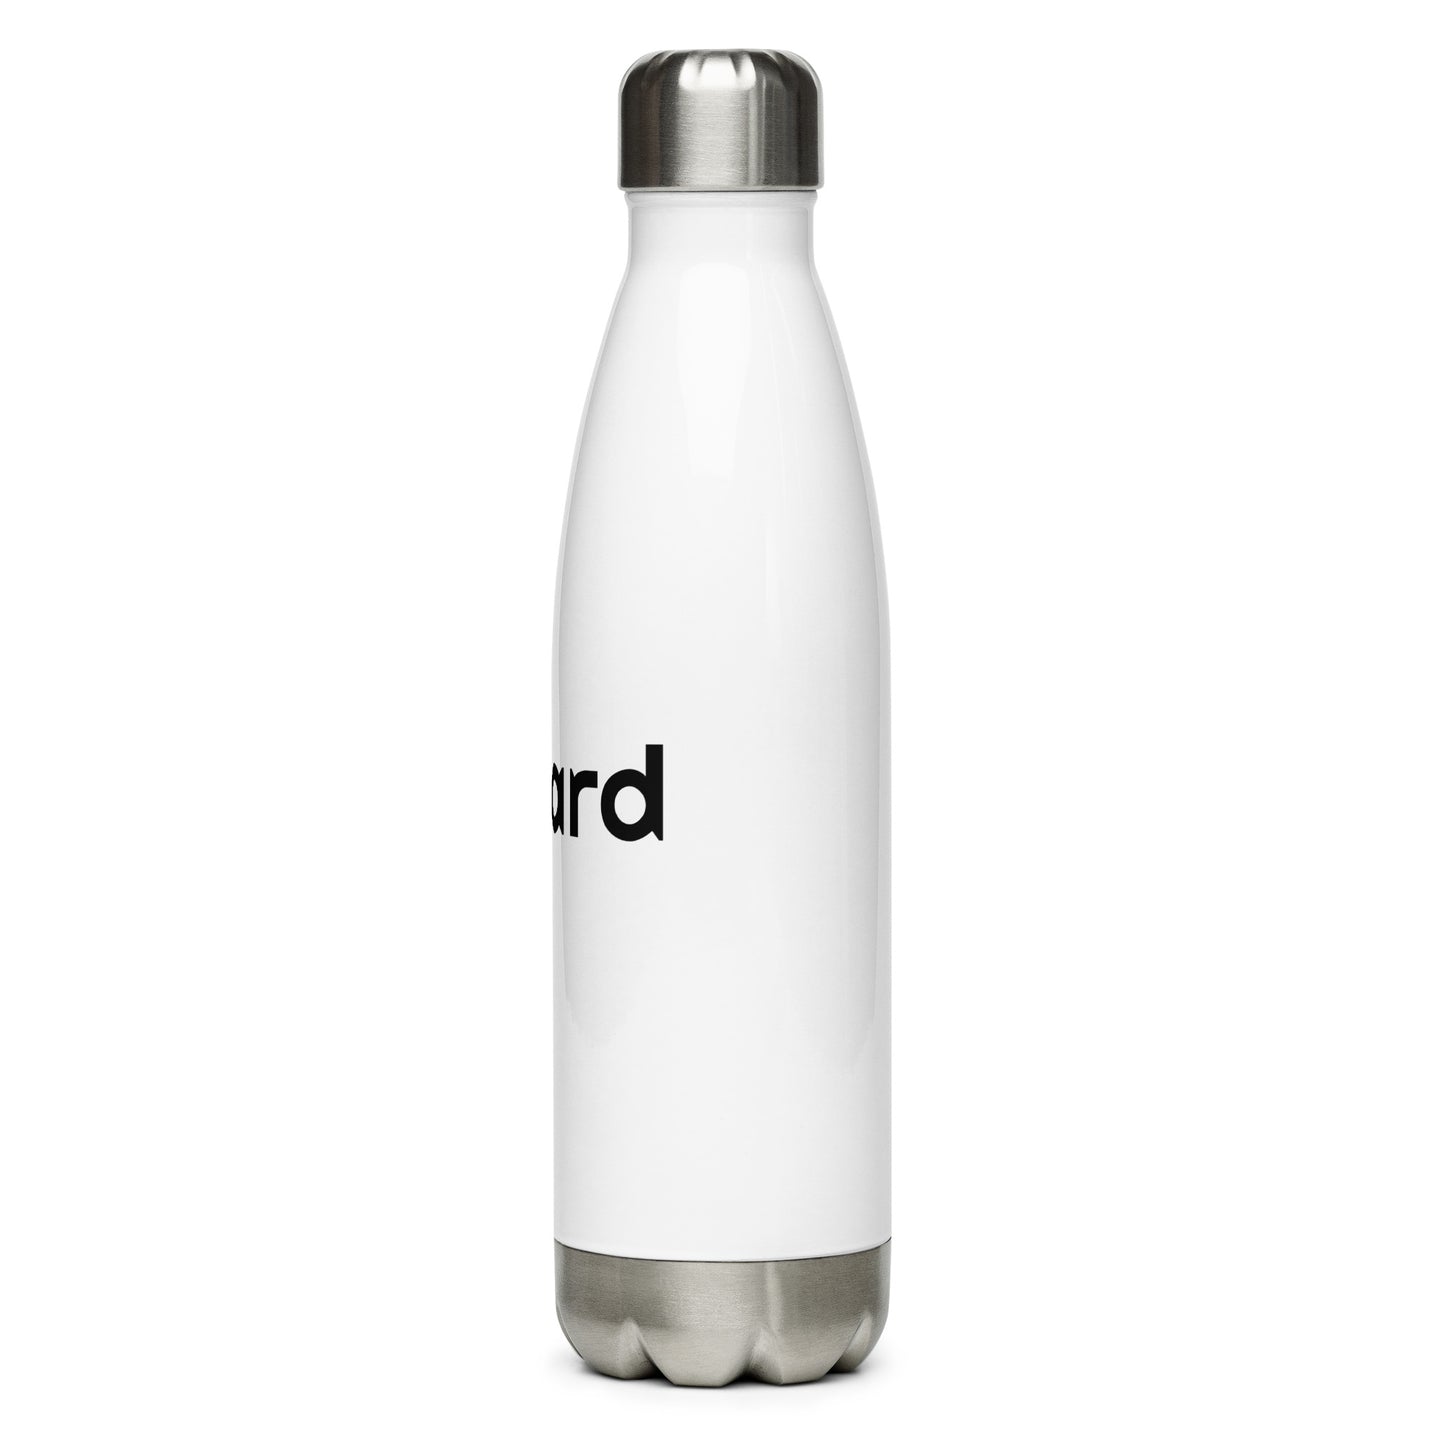 Théard steel water bottle